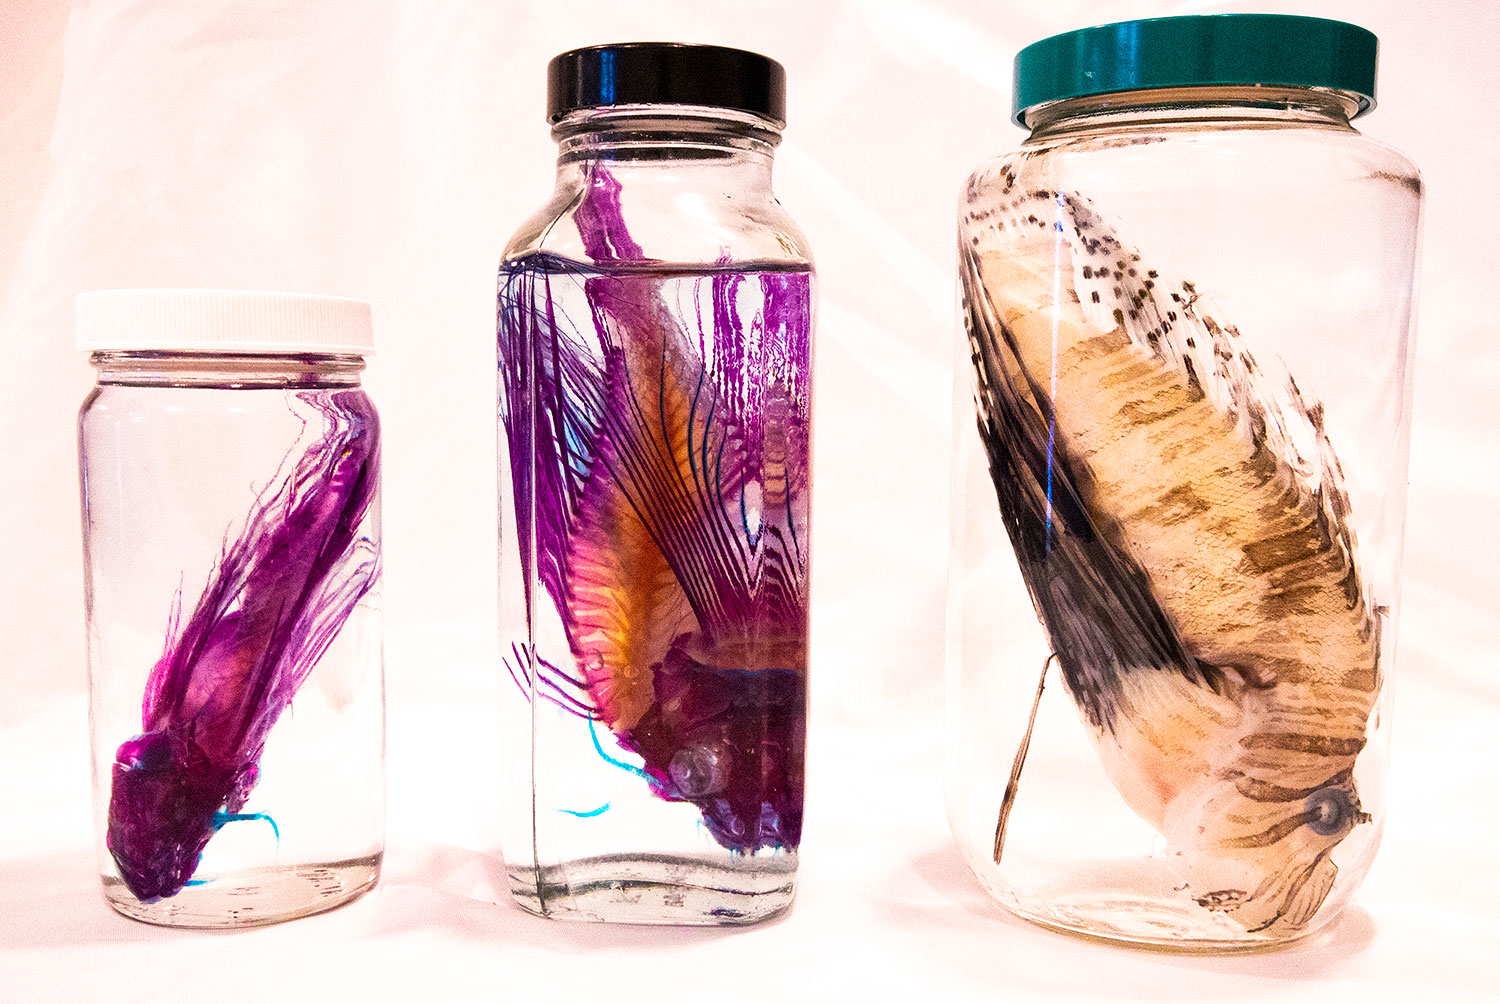 preserved lionfish specimen in jar